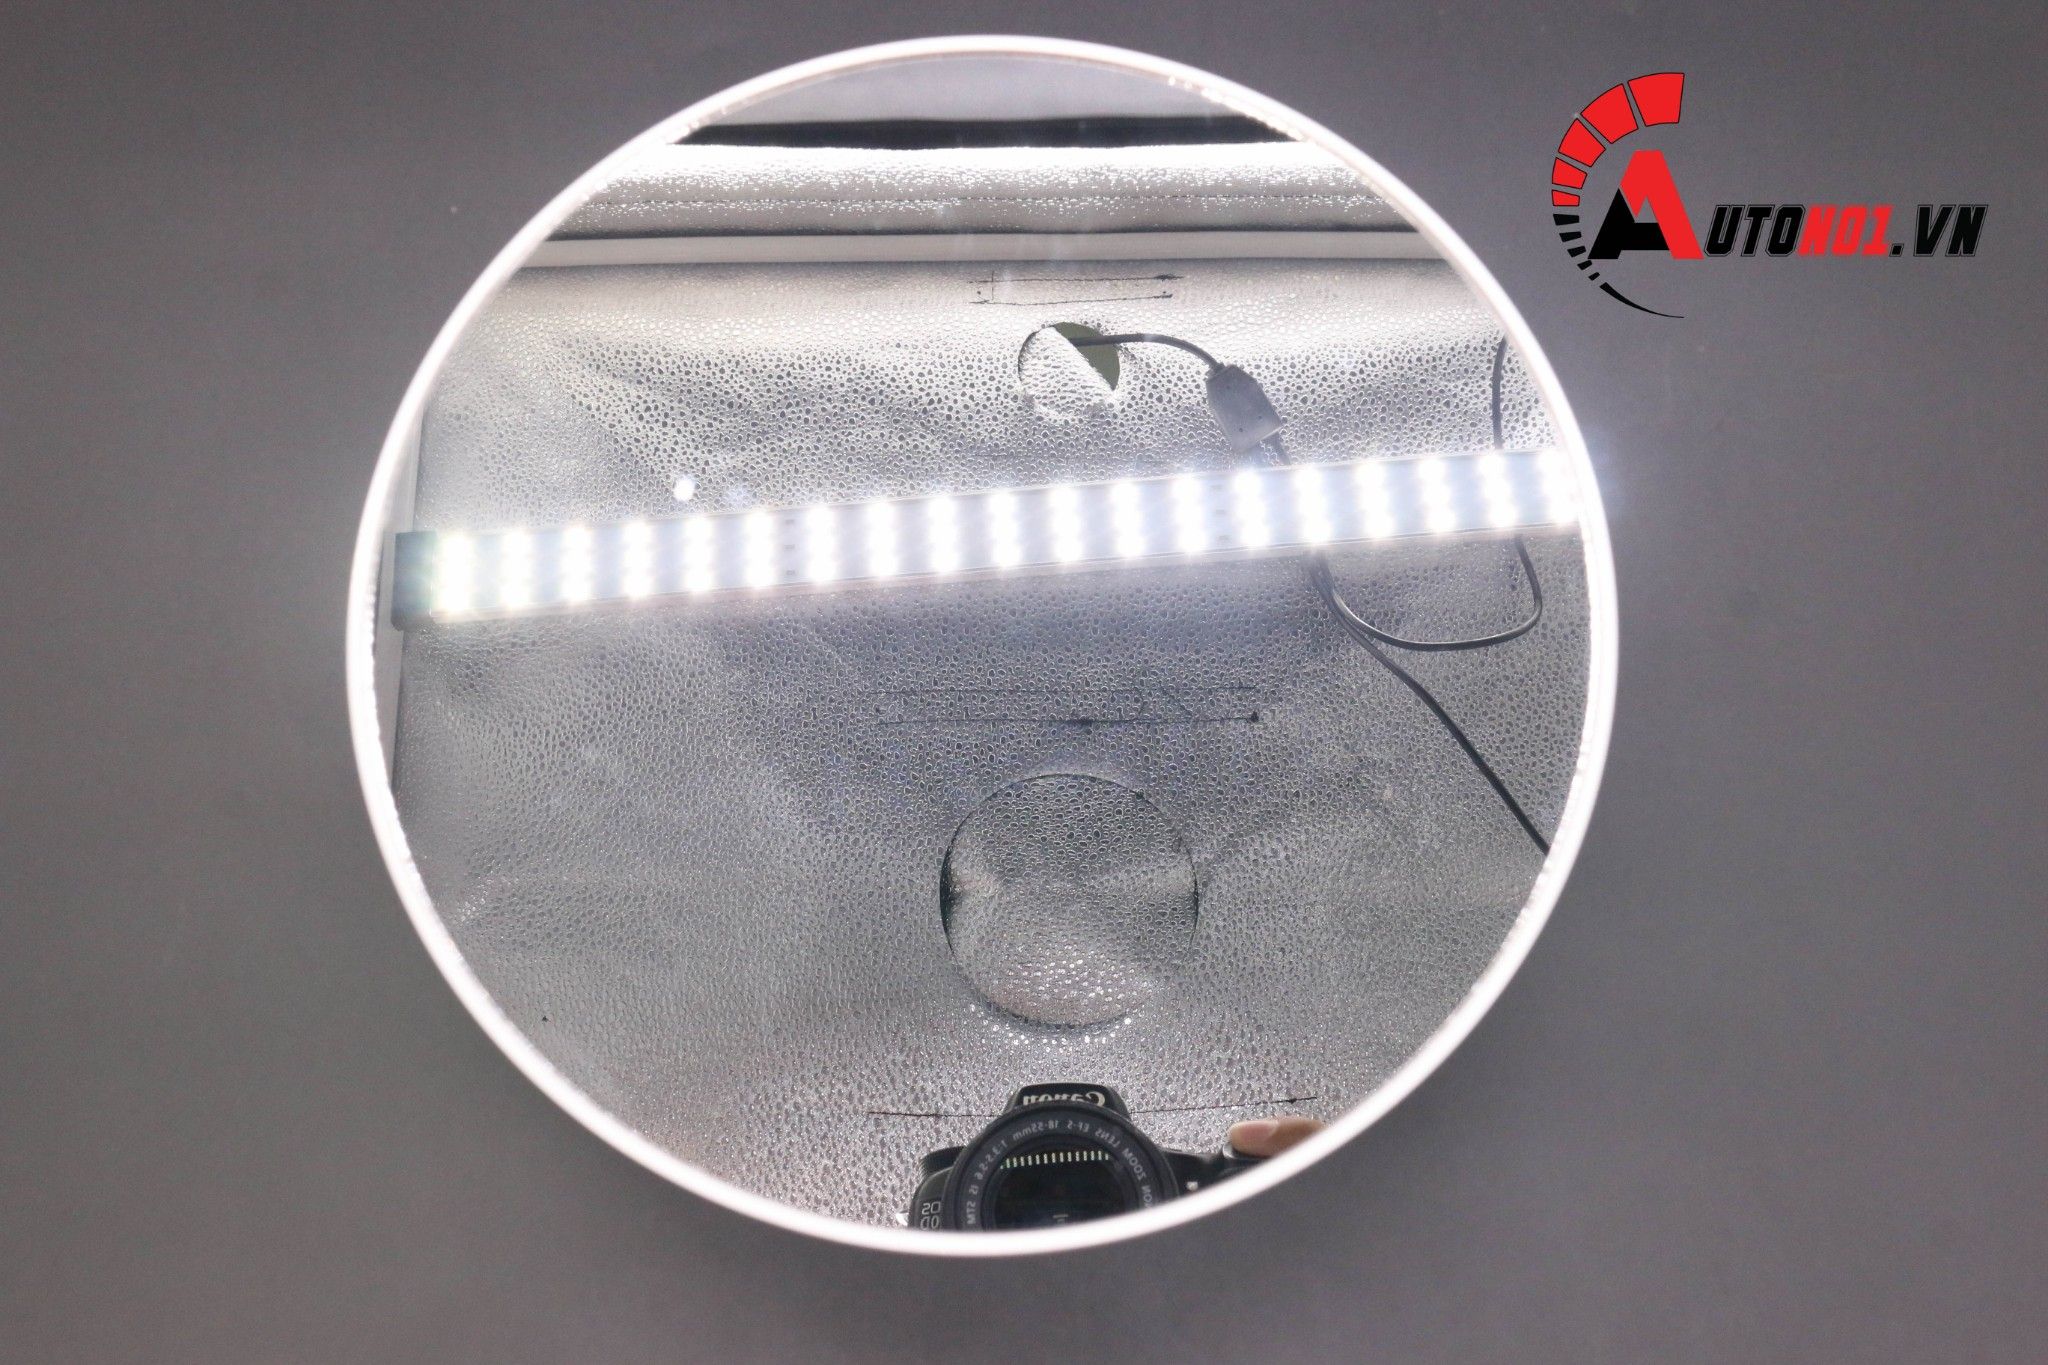  Phụ kiện đế xoay sản phẩm 360 độ màu trắng mặt gương dùng pin và điện đường kính 20cm 5366 